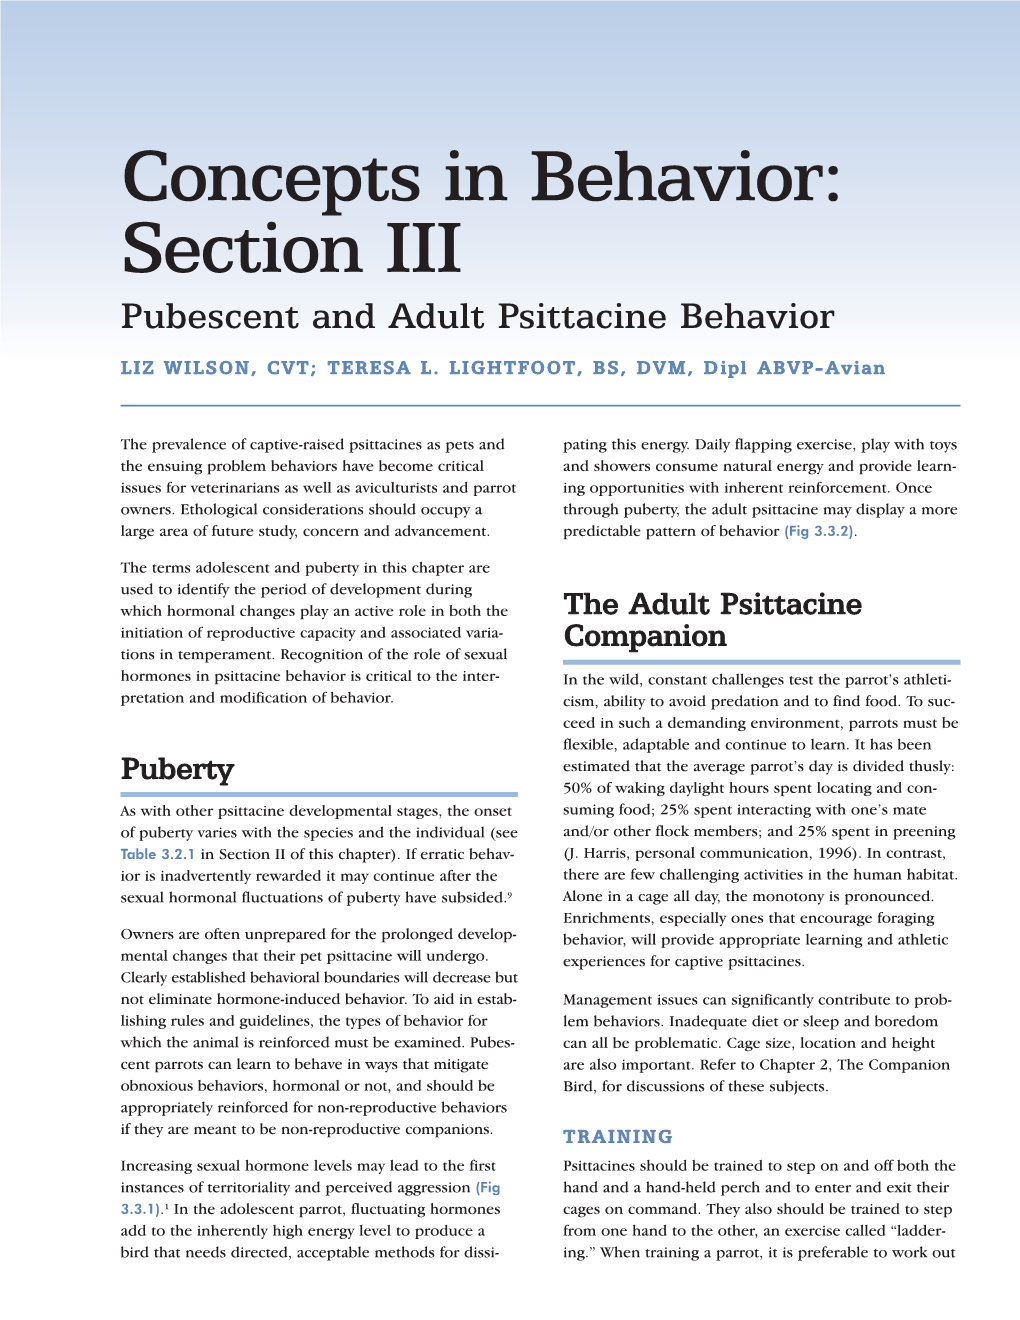 03 Concepts in Behavior III.Qxd